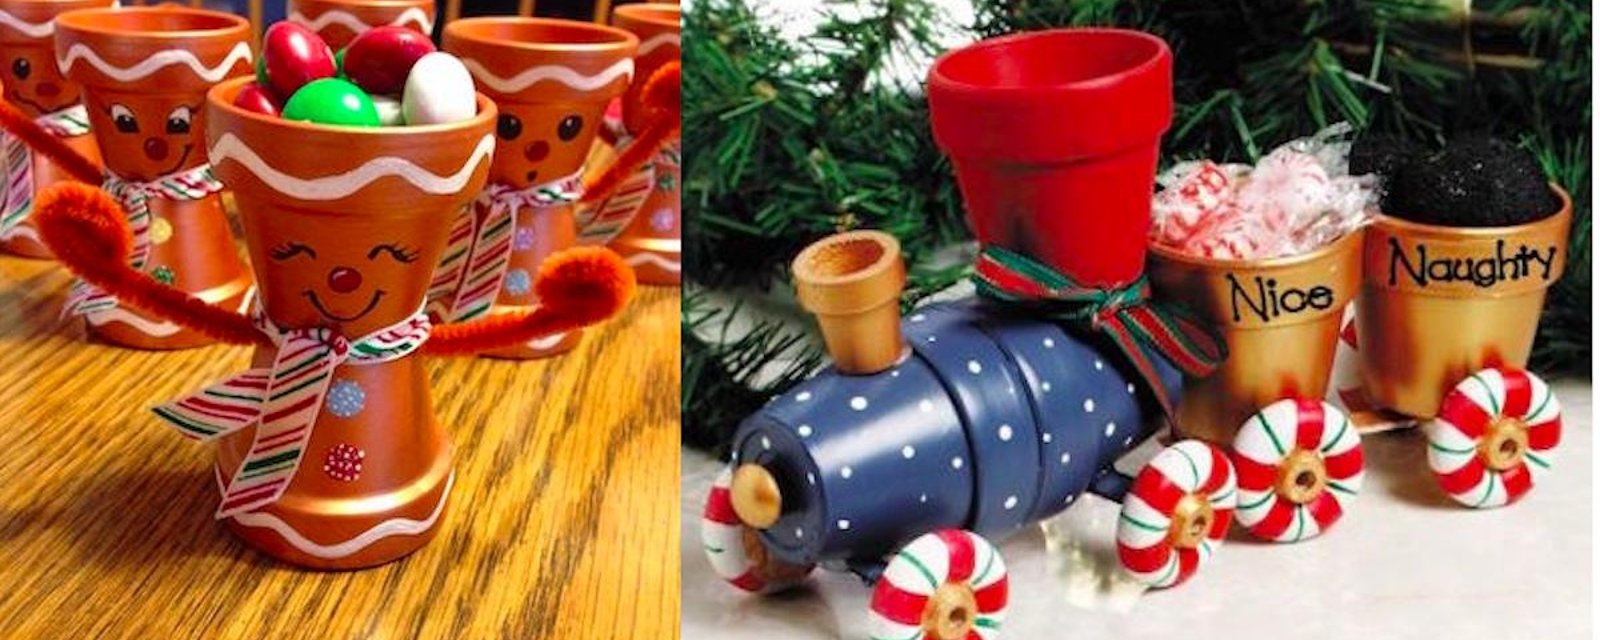 20 créations festives à faire avec des pots de terre cuite